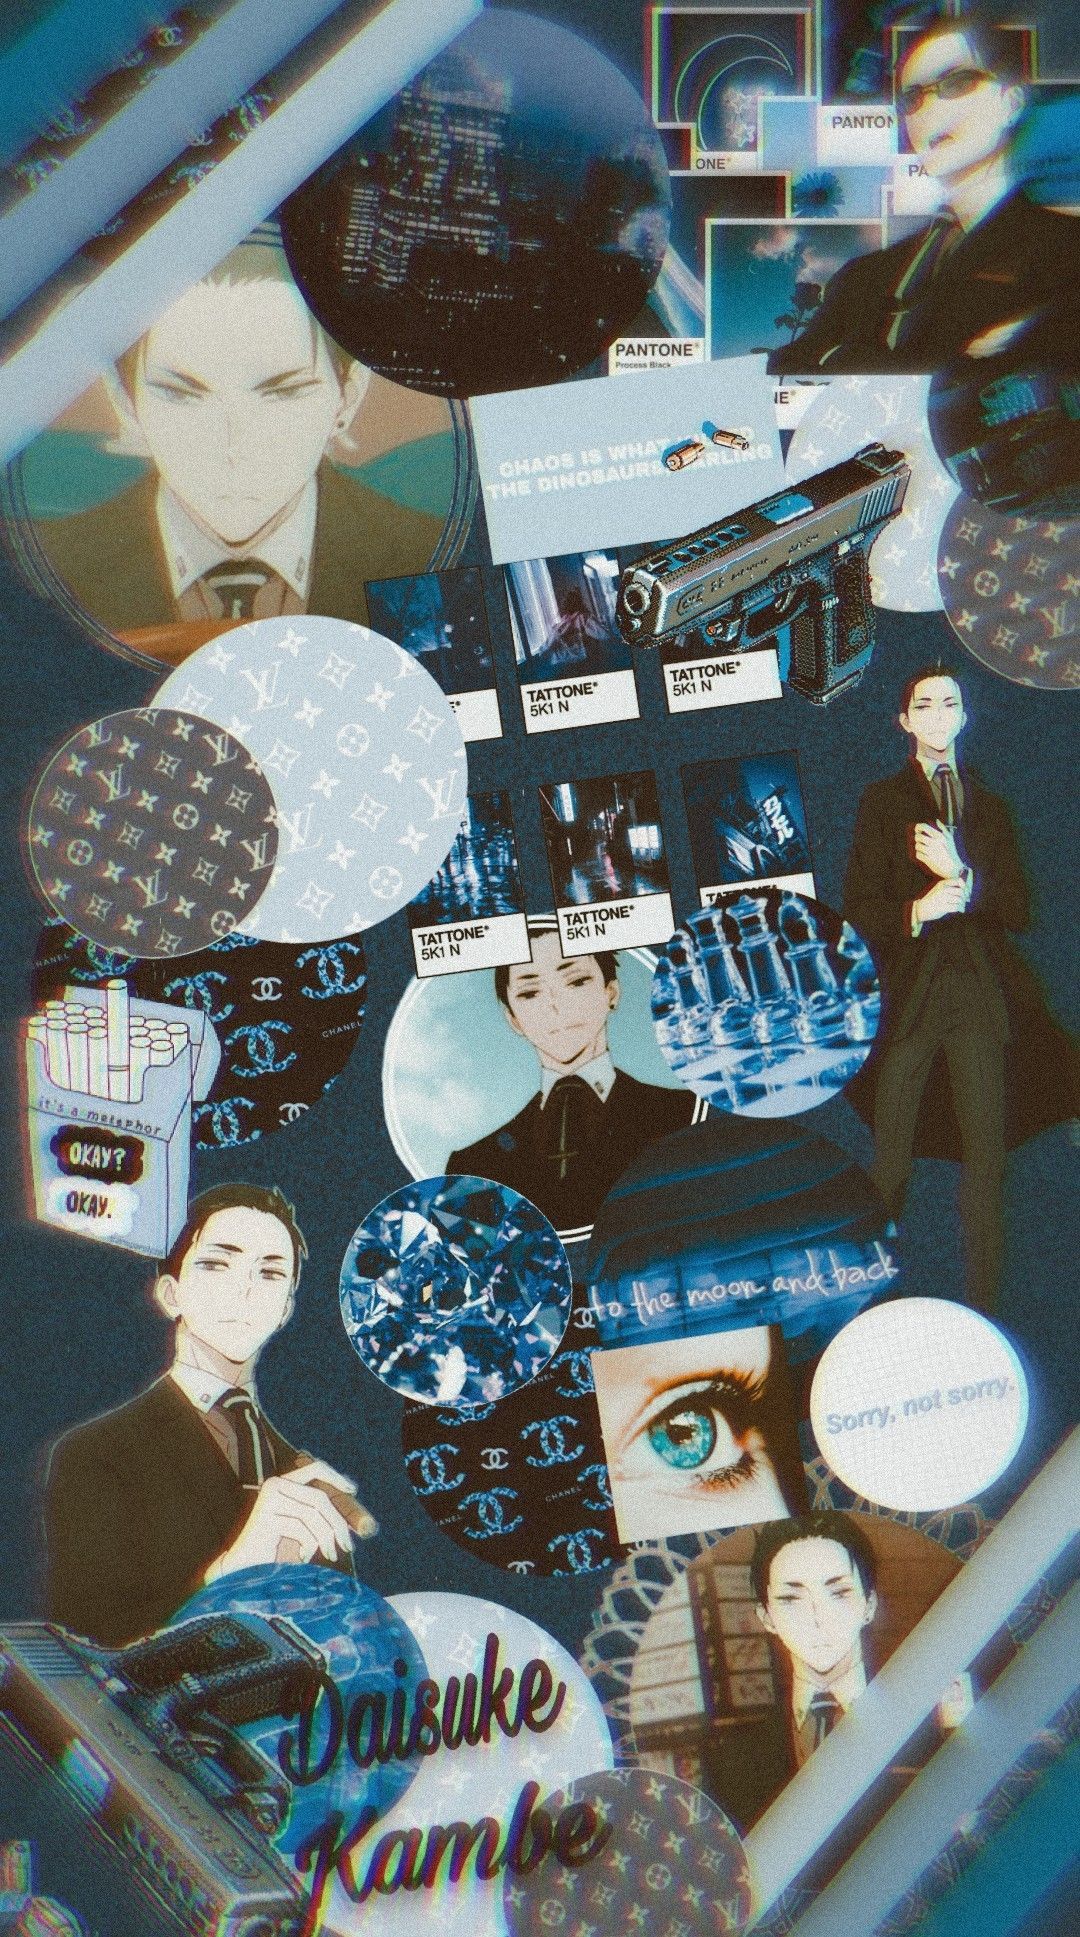 Daisuke Kambe Aesthetic Wallpaper (Blue). Anime wallpaper, Wallpaper, Anime